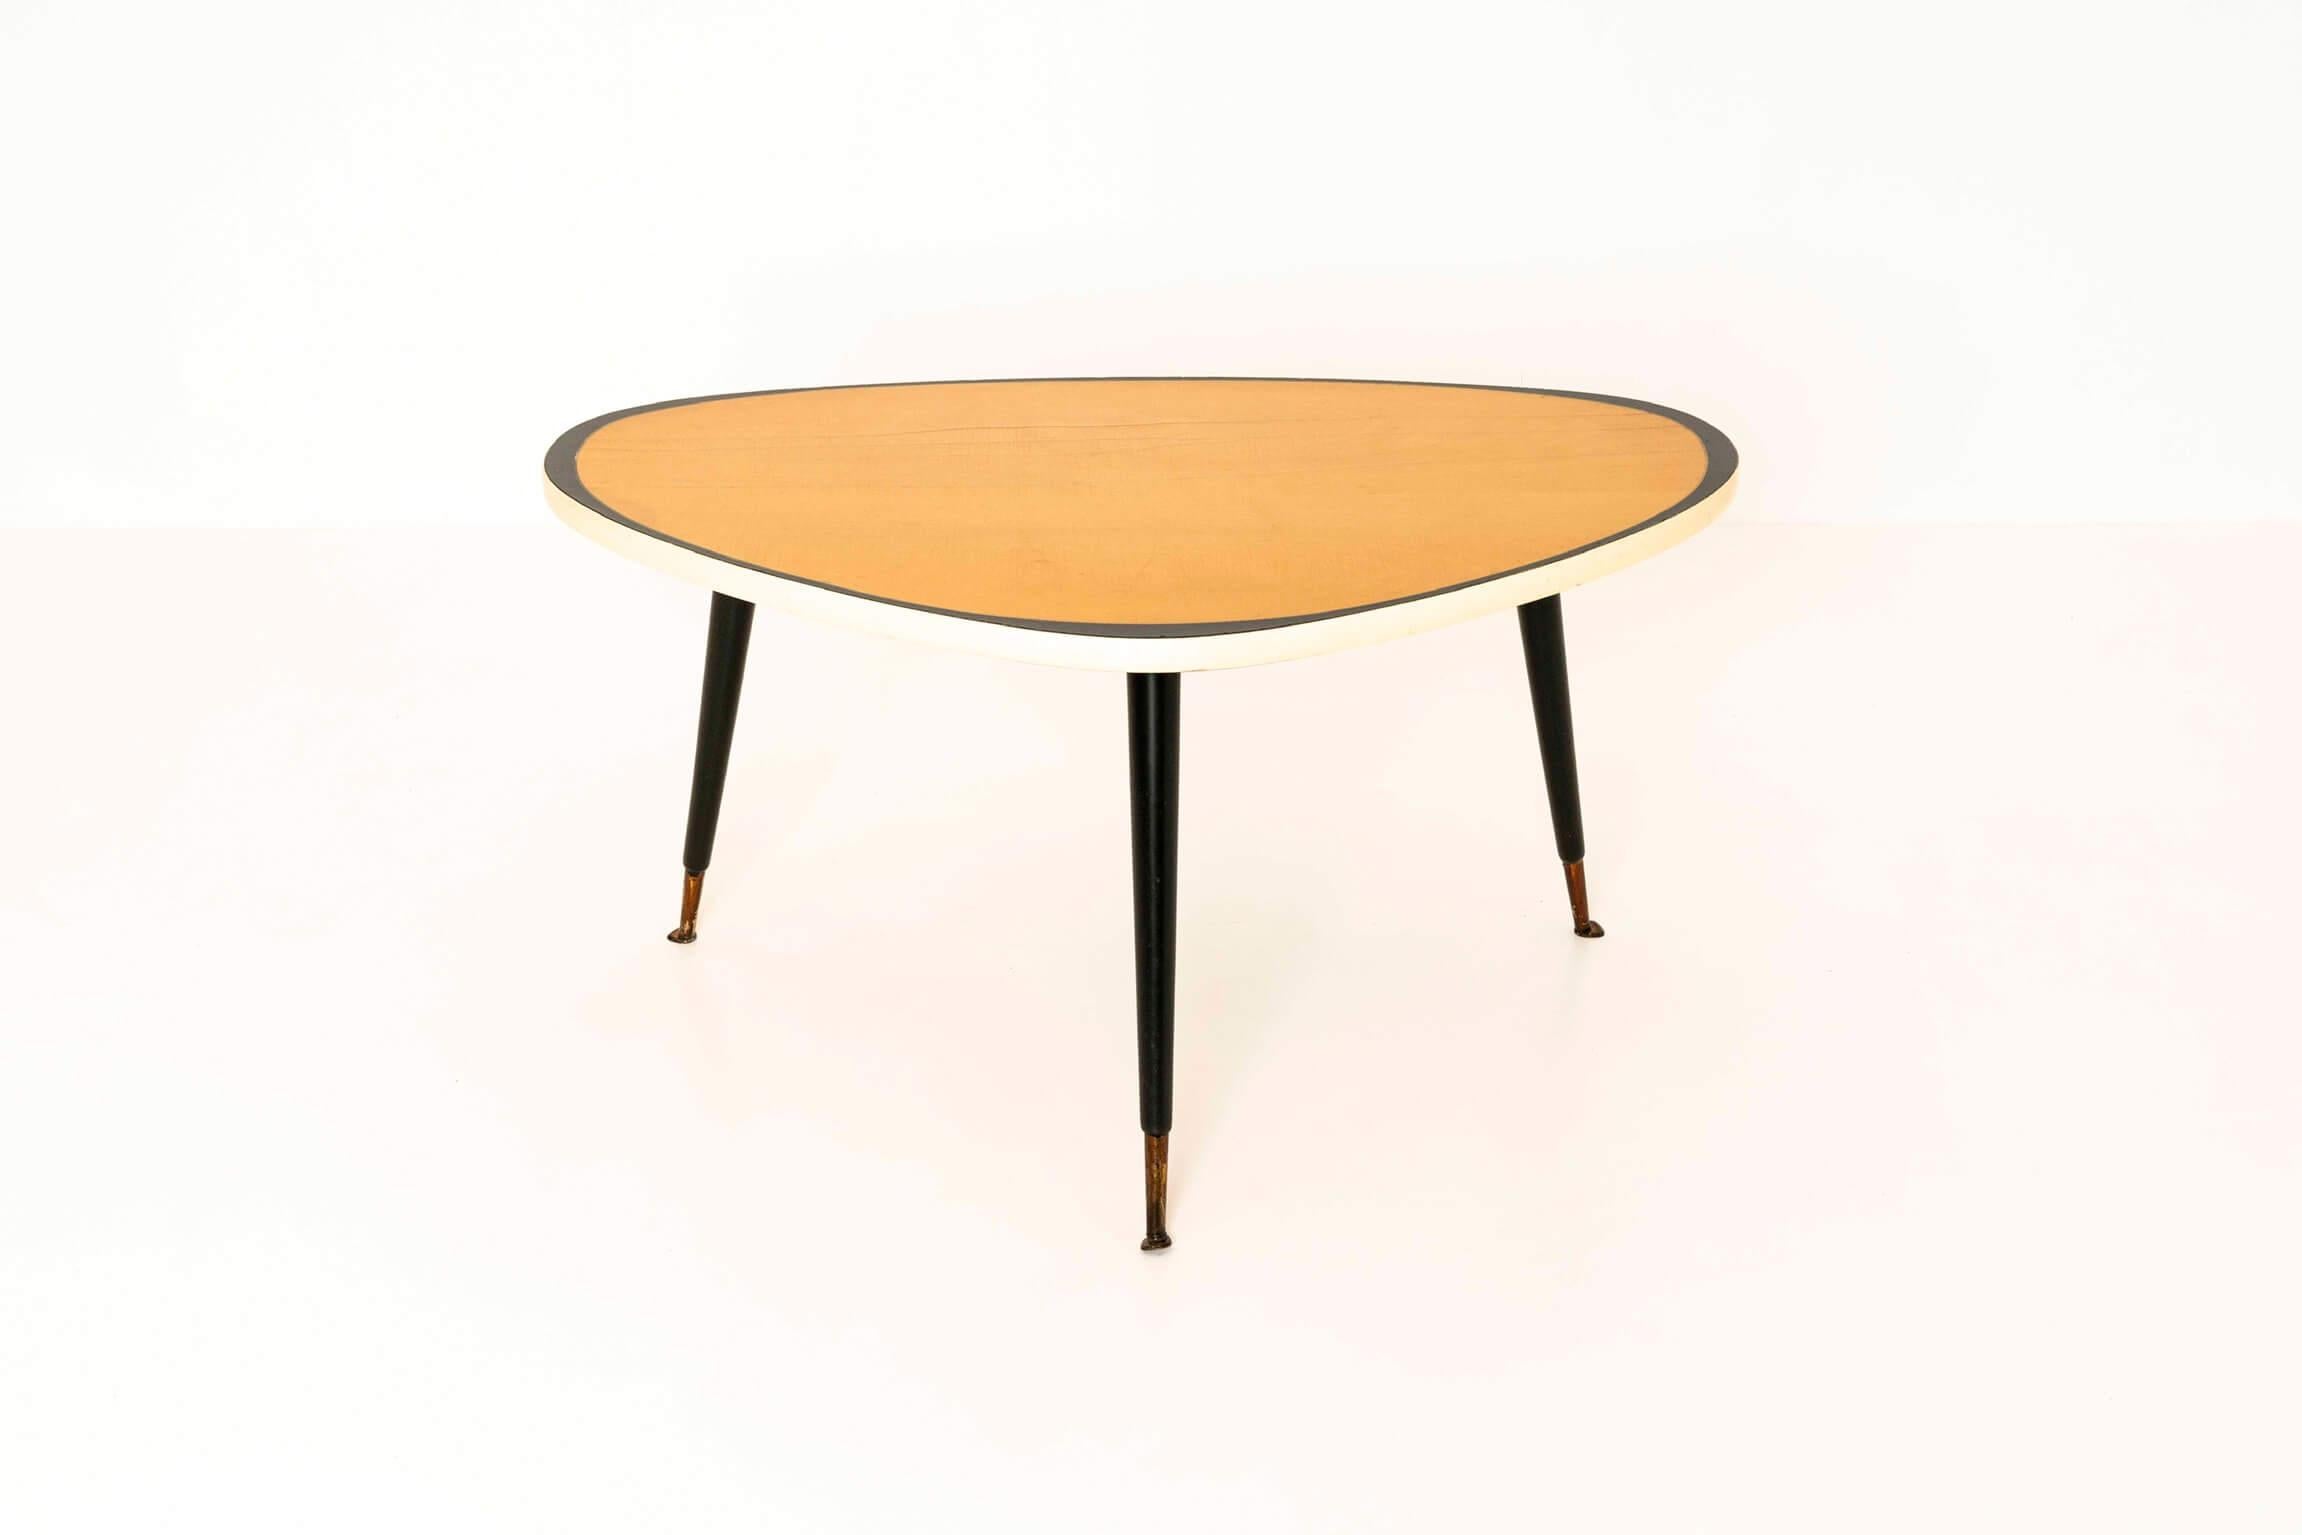 Schöner dreieckiger Vintage-Couchtisch aus Deutschland aus den 1950er Jahren. Der Tisch ist im Stil von Ilse möbel gefertigt und könnte durchaus von ihr sein. Die drei schwarzen Beine haben Messingfüße. Der Tisch hat eine gelbe Platte mit